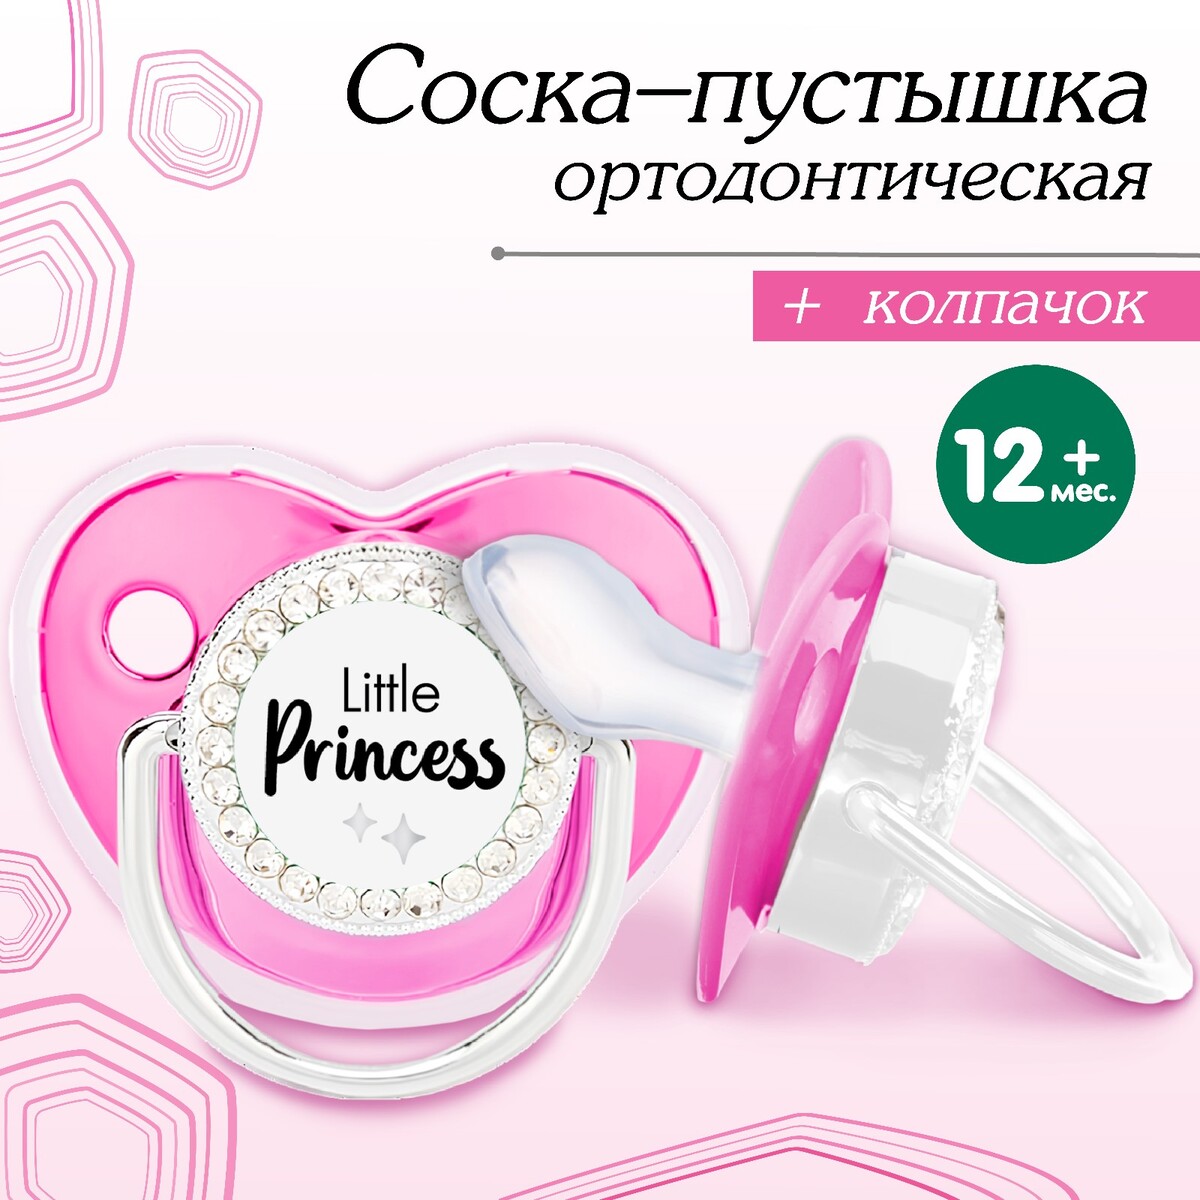 Соска - пустышка ортодонтическая, little princess, с колпачком, +12 мес., розовая/серебро, стразы стразы самоклеющиеся d 6 мм розовый